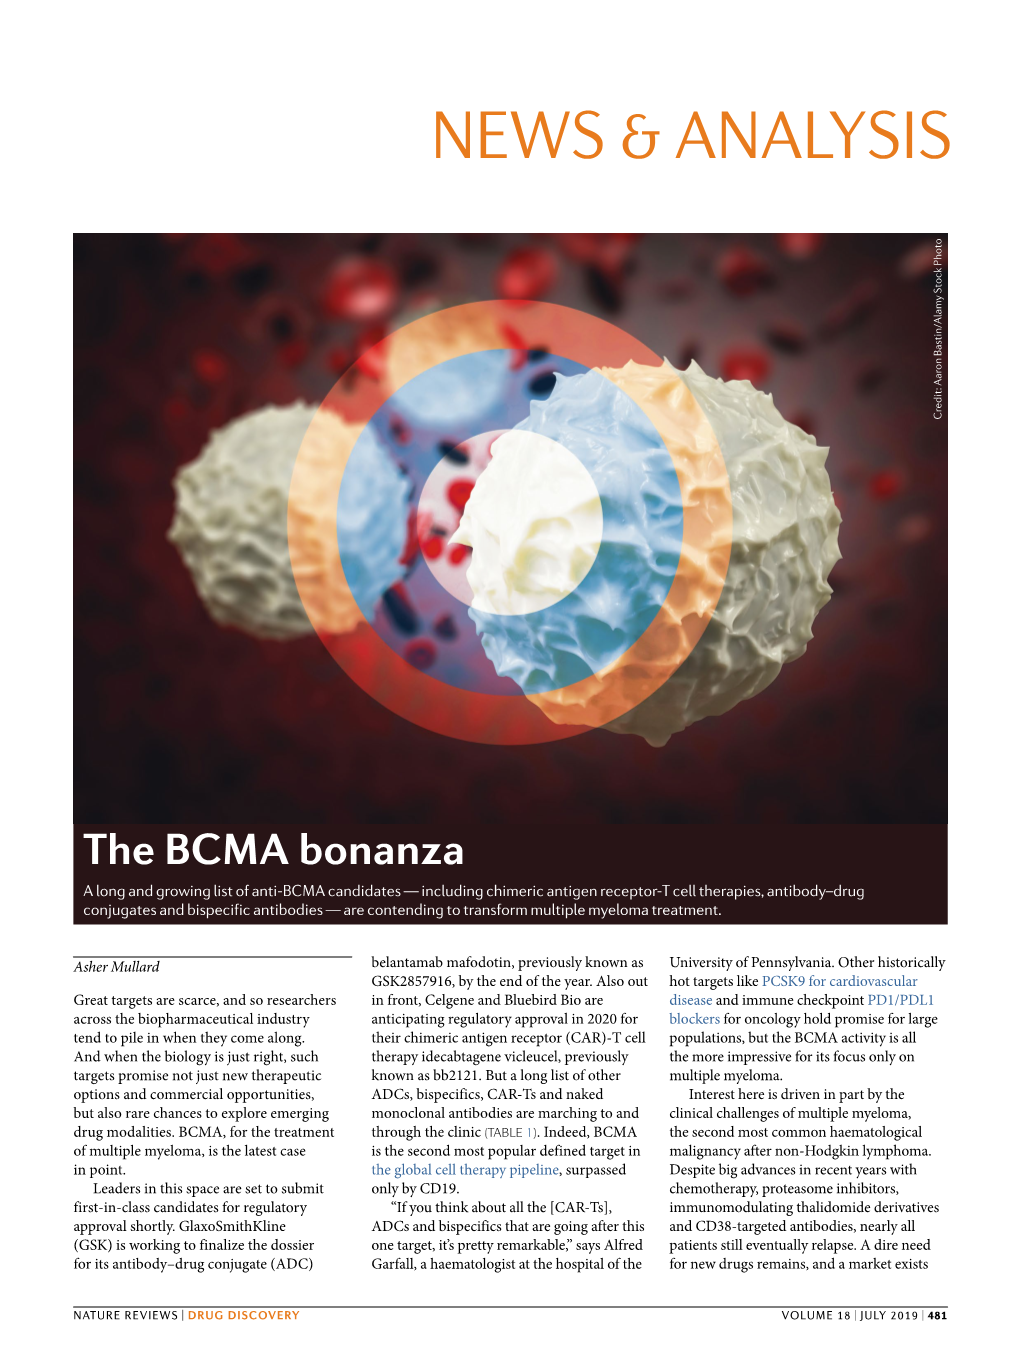 The BCMA Bonanza